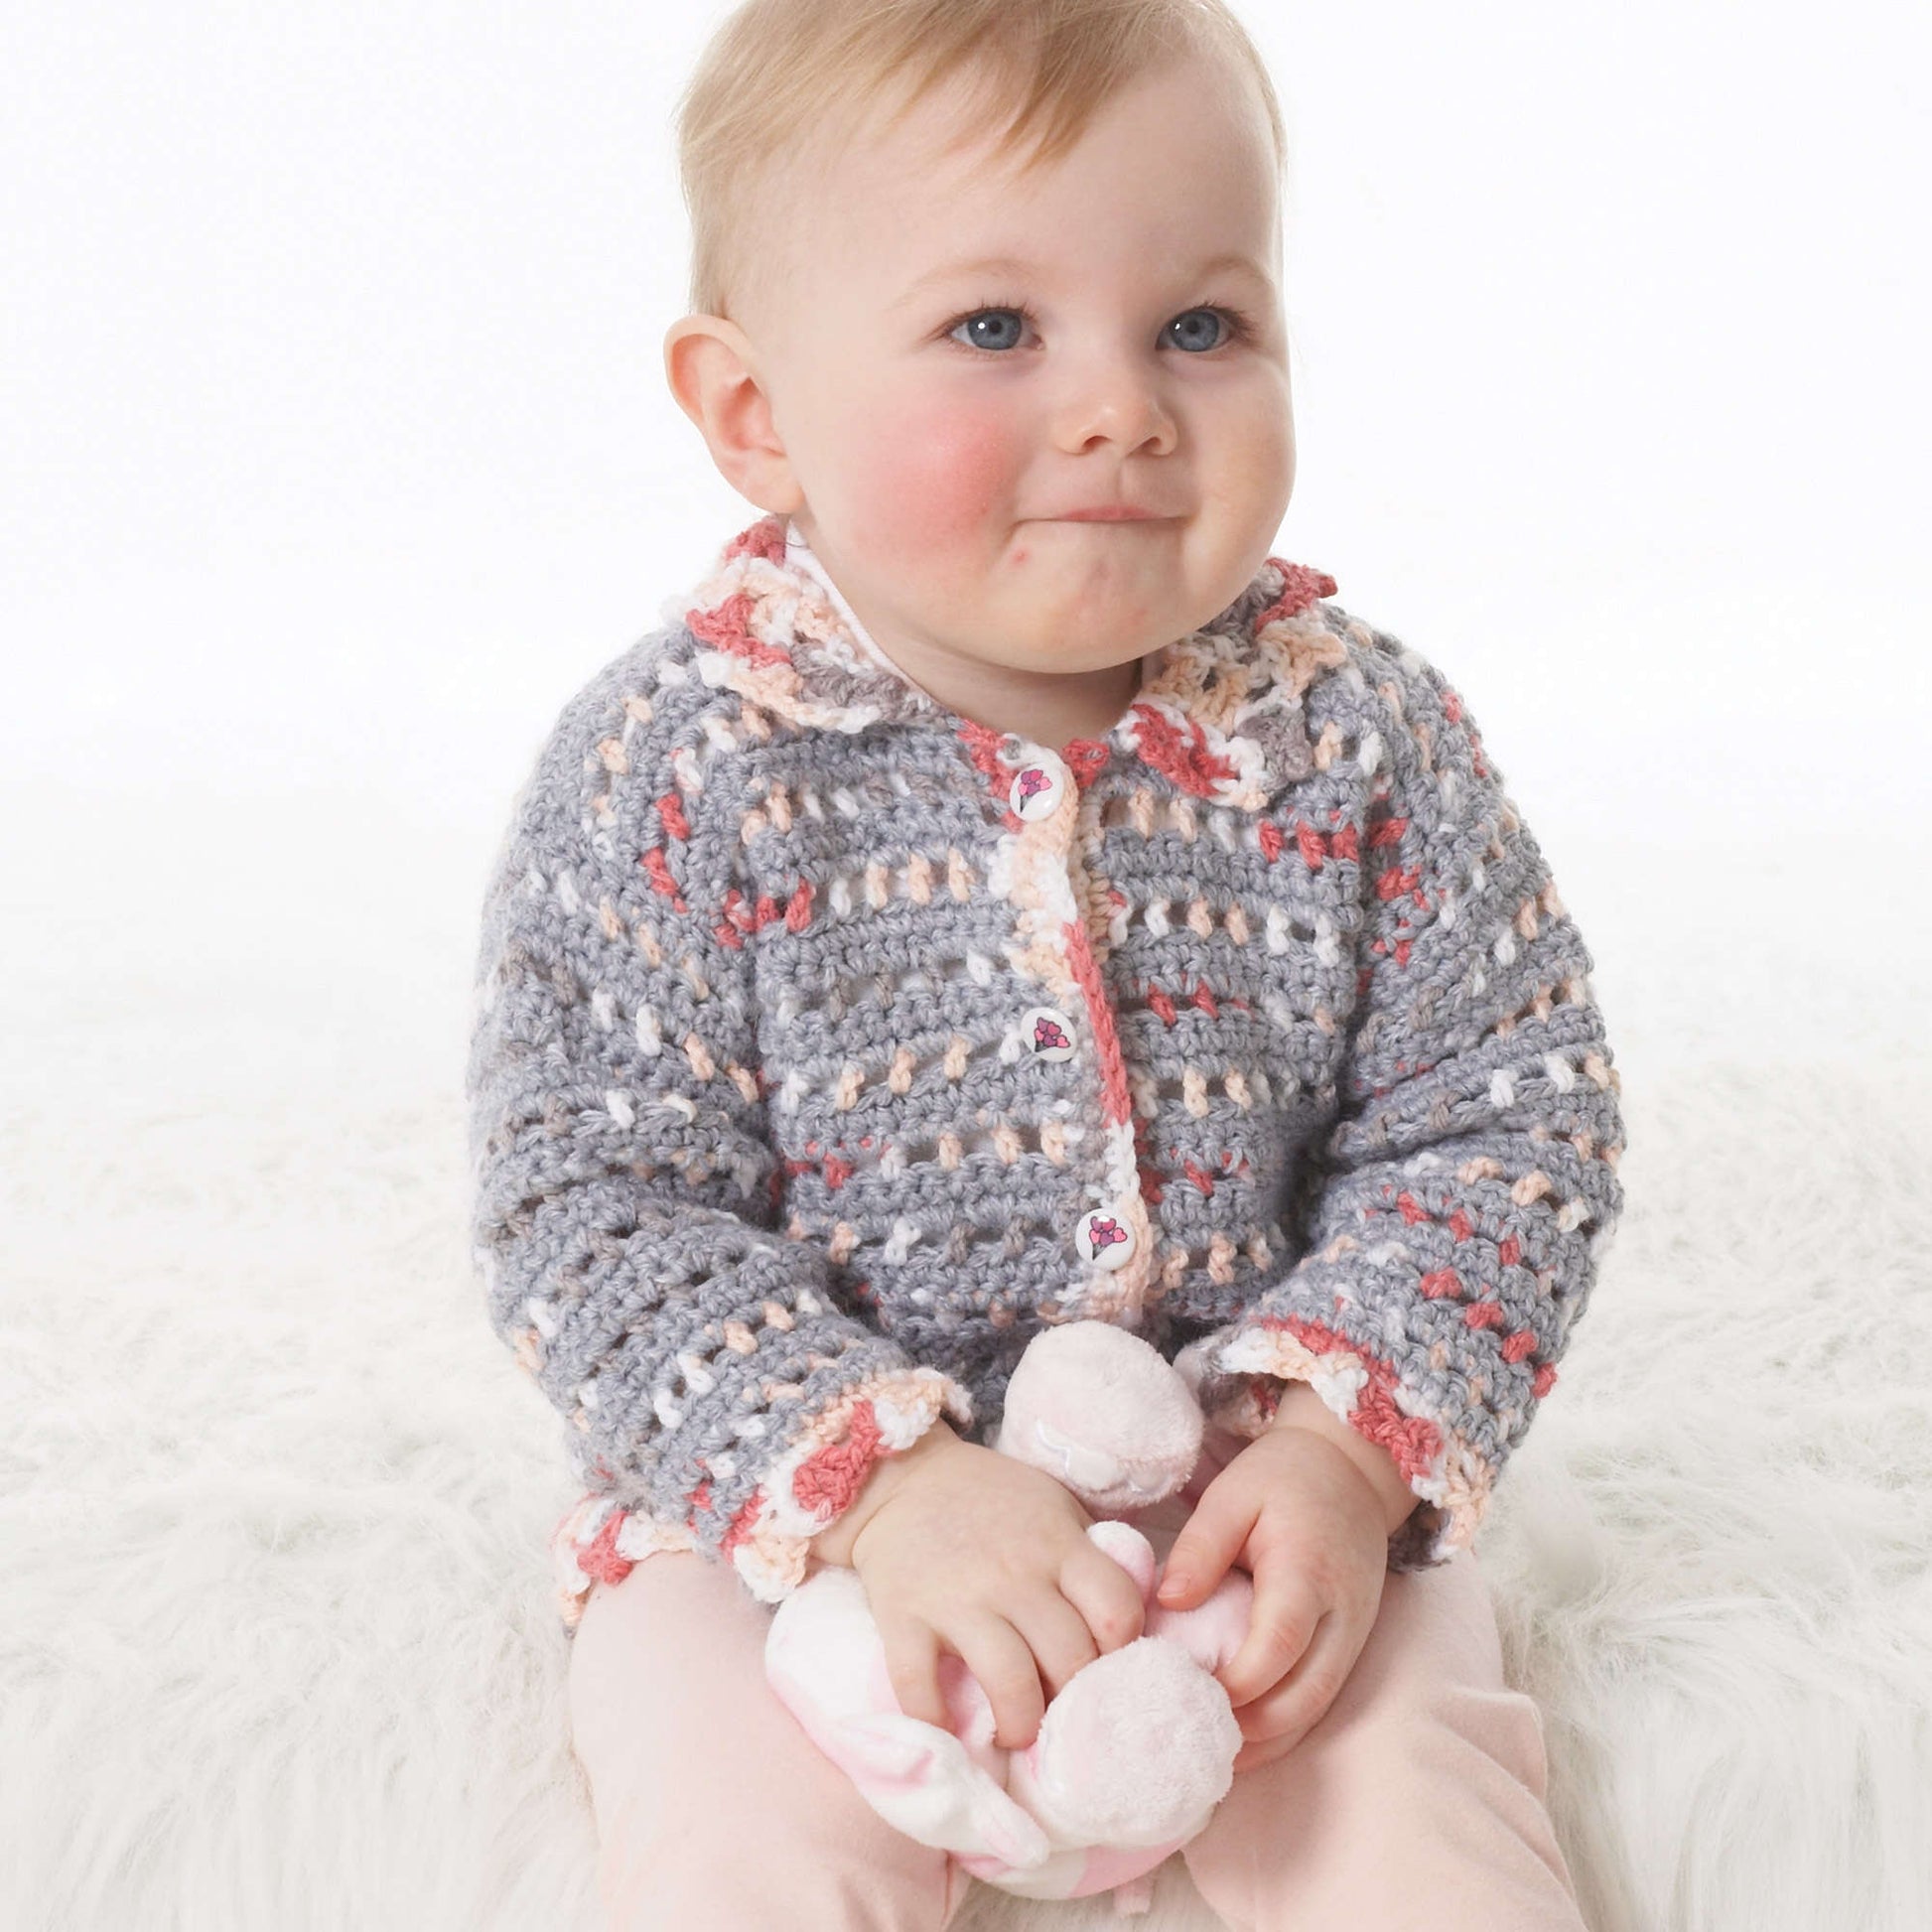 Free Bernat Baby's Lacy Jacket Crochet Pattern